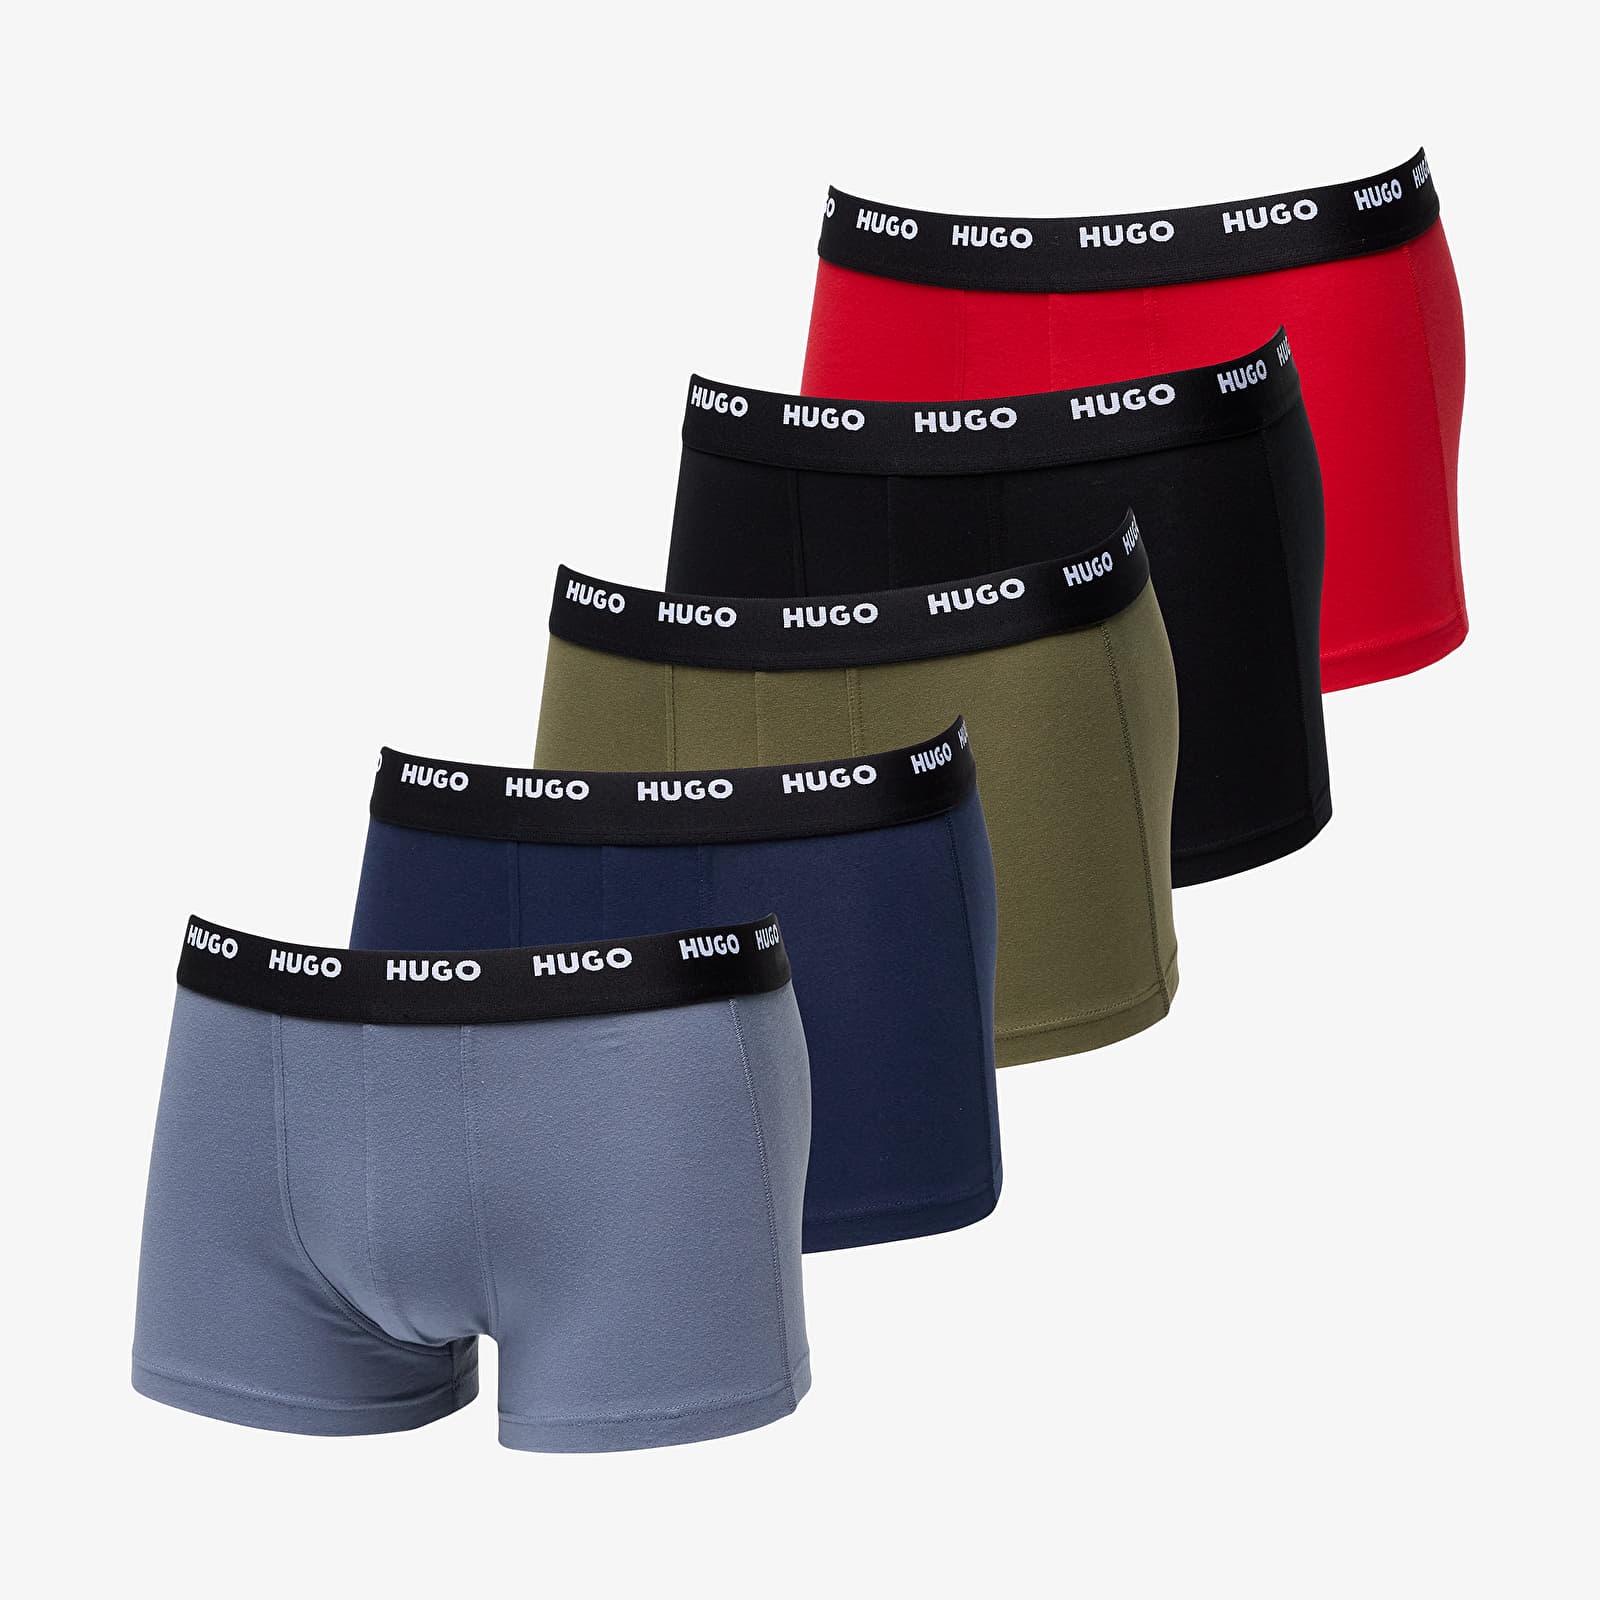 Boxer shorts Hugo Boss Trunk 5-Pack Trunks Multicolor